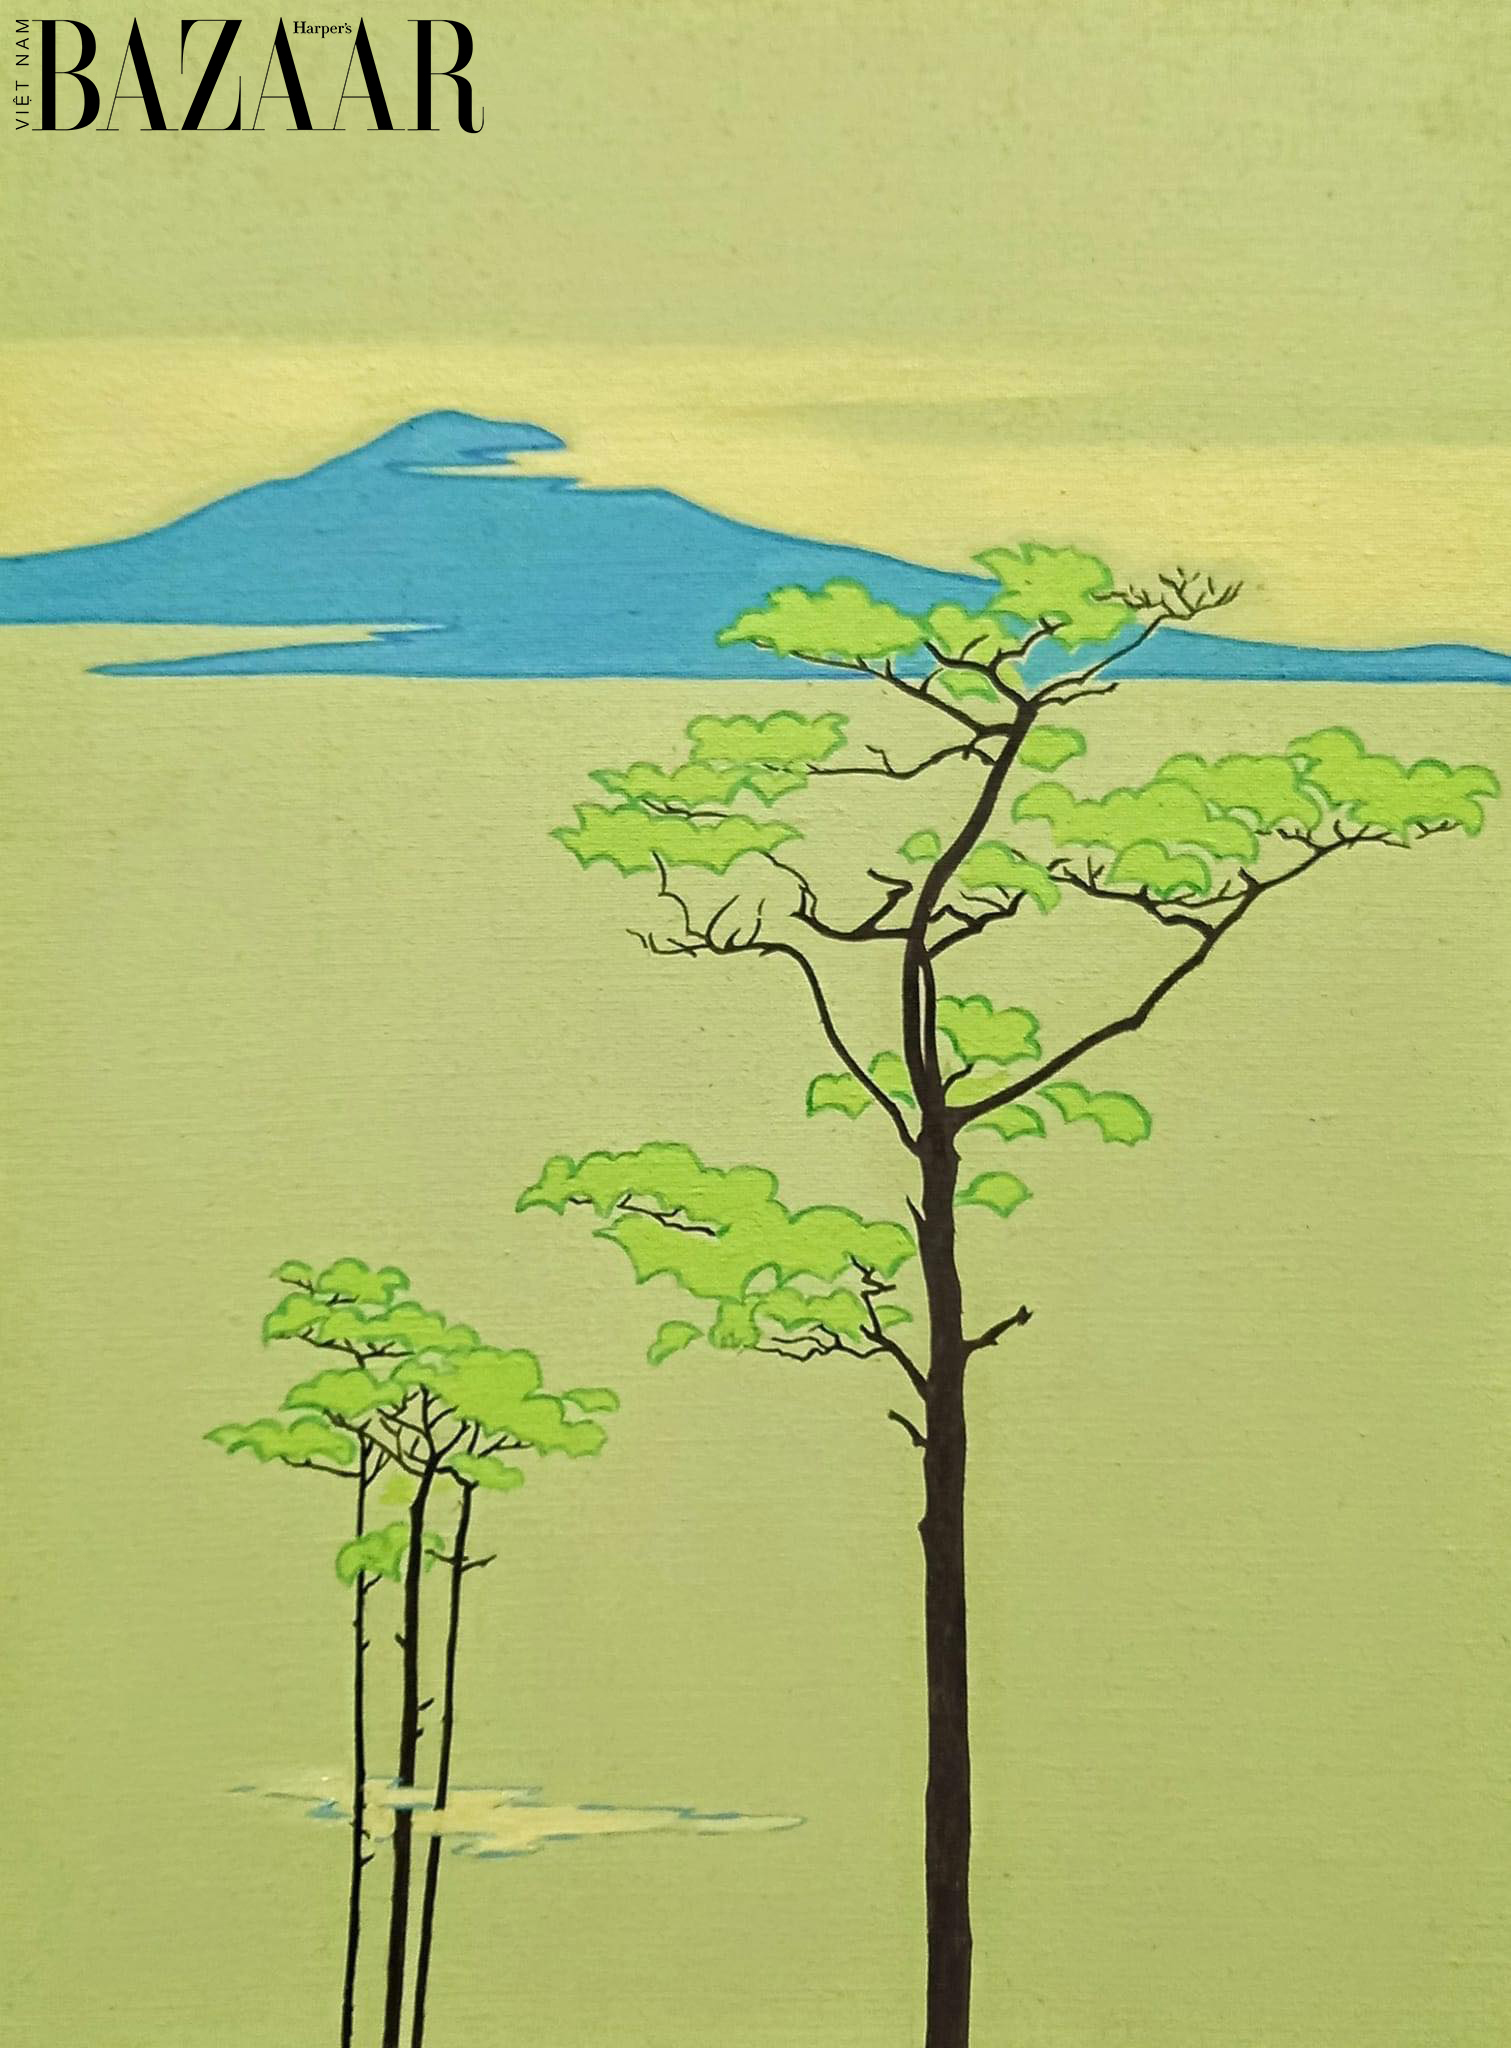 BZ Lifestyle NguyenNgocLiem04 - Triển lãm tranh Nguyễn Ngọc Liêm ngắm nhìn “tĩnh lặng” từ đồng bằng đến núi cao